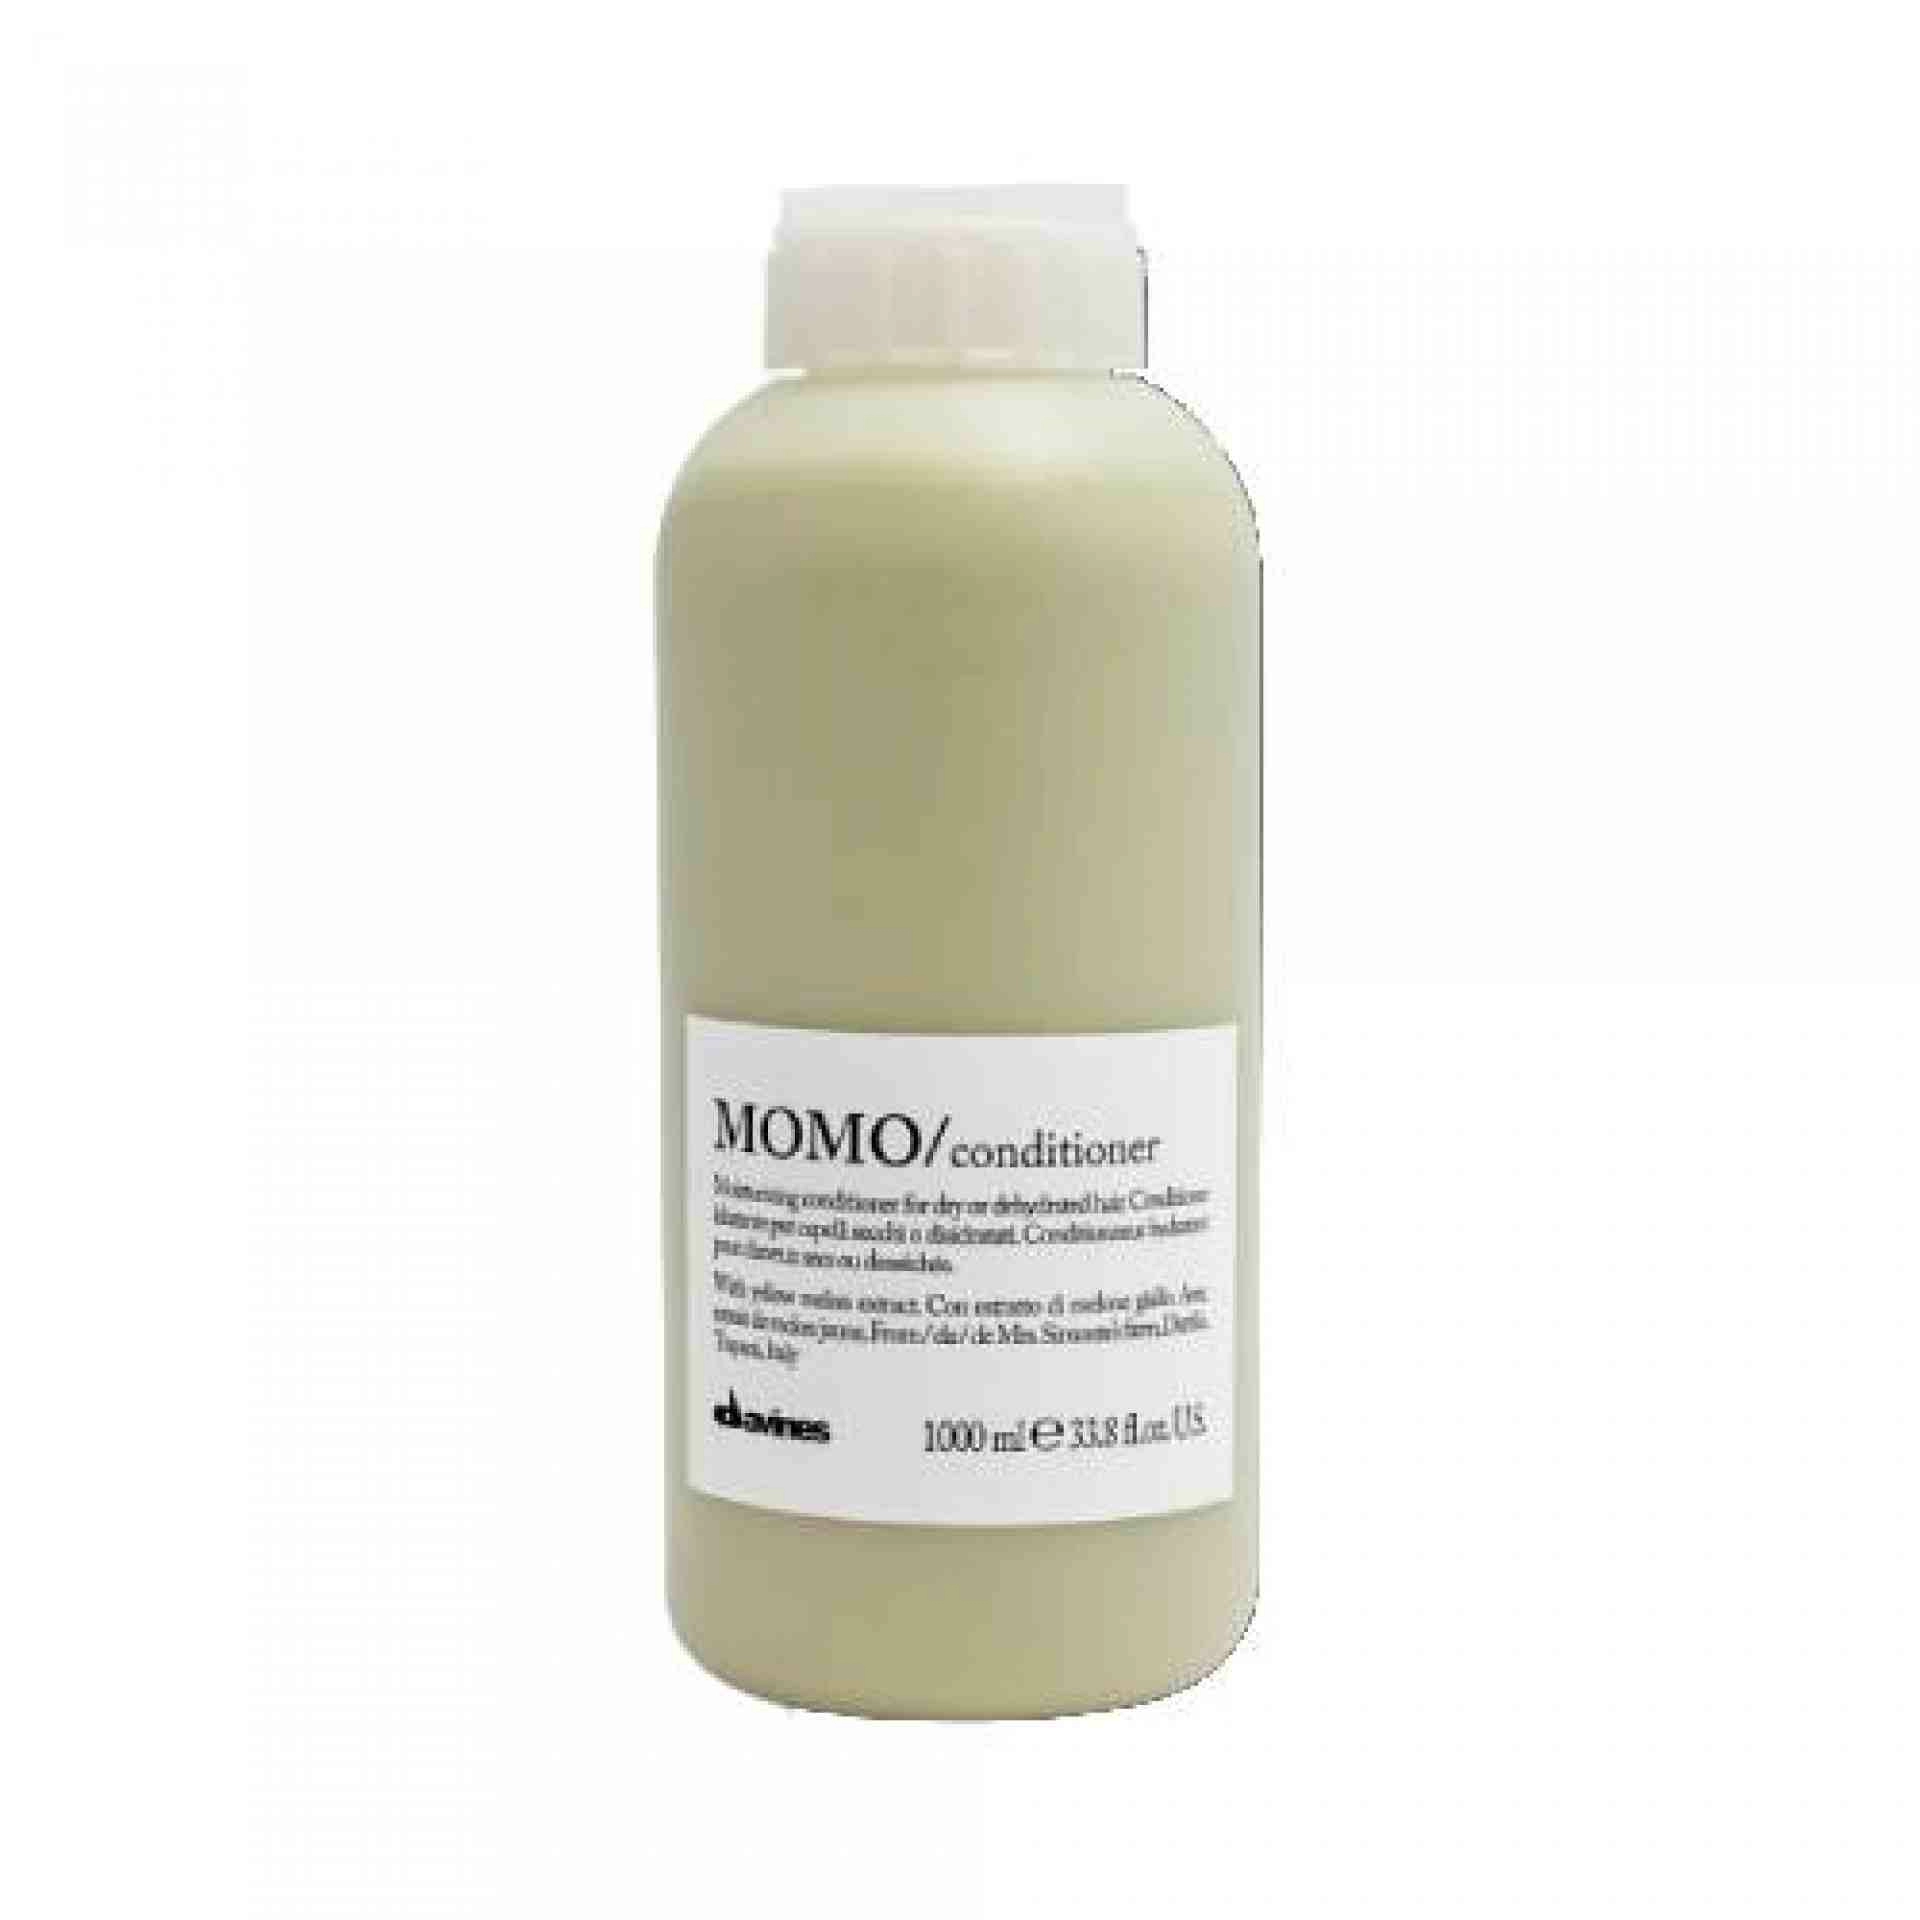 MOMO / Conditioner | Acondicionador hidratante - Essential Haircare - Davines ®